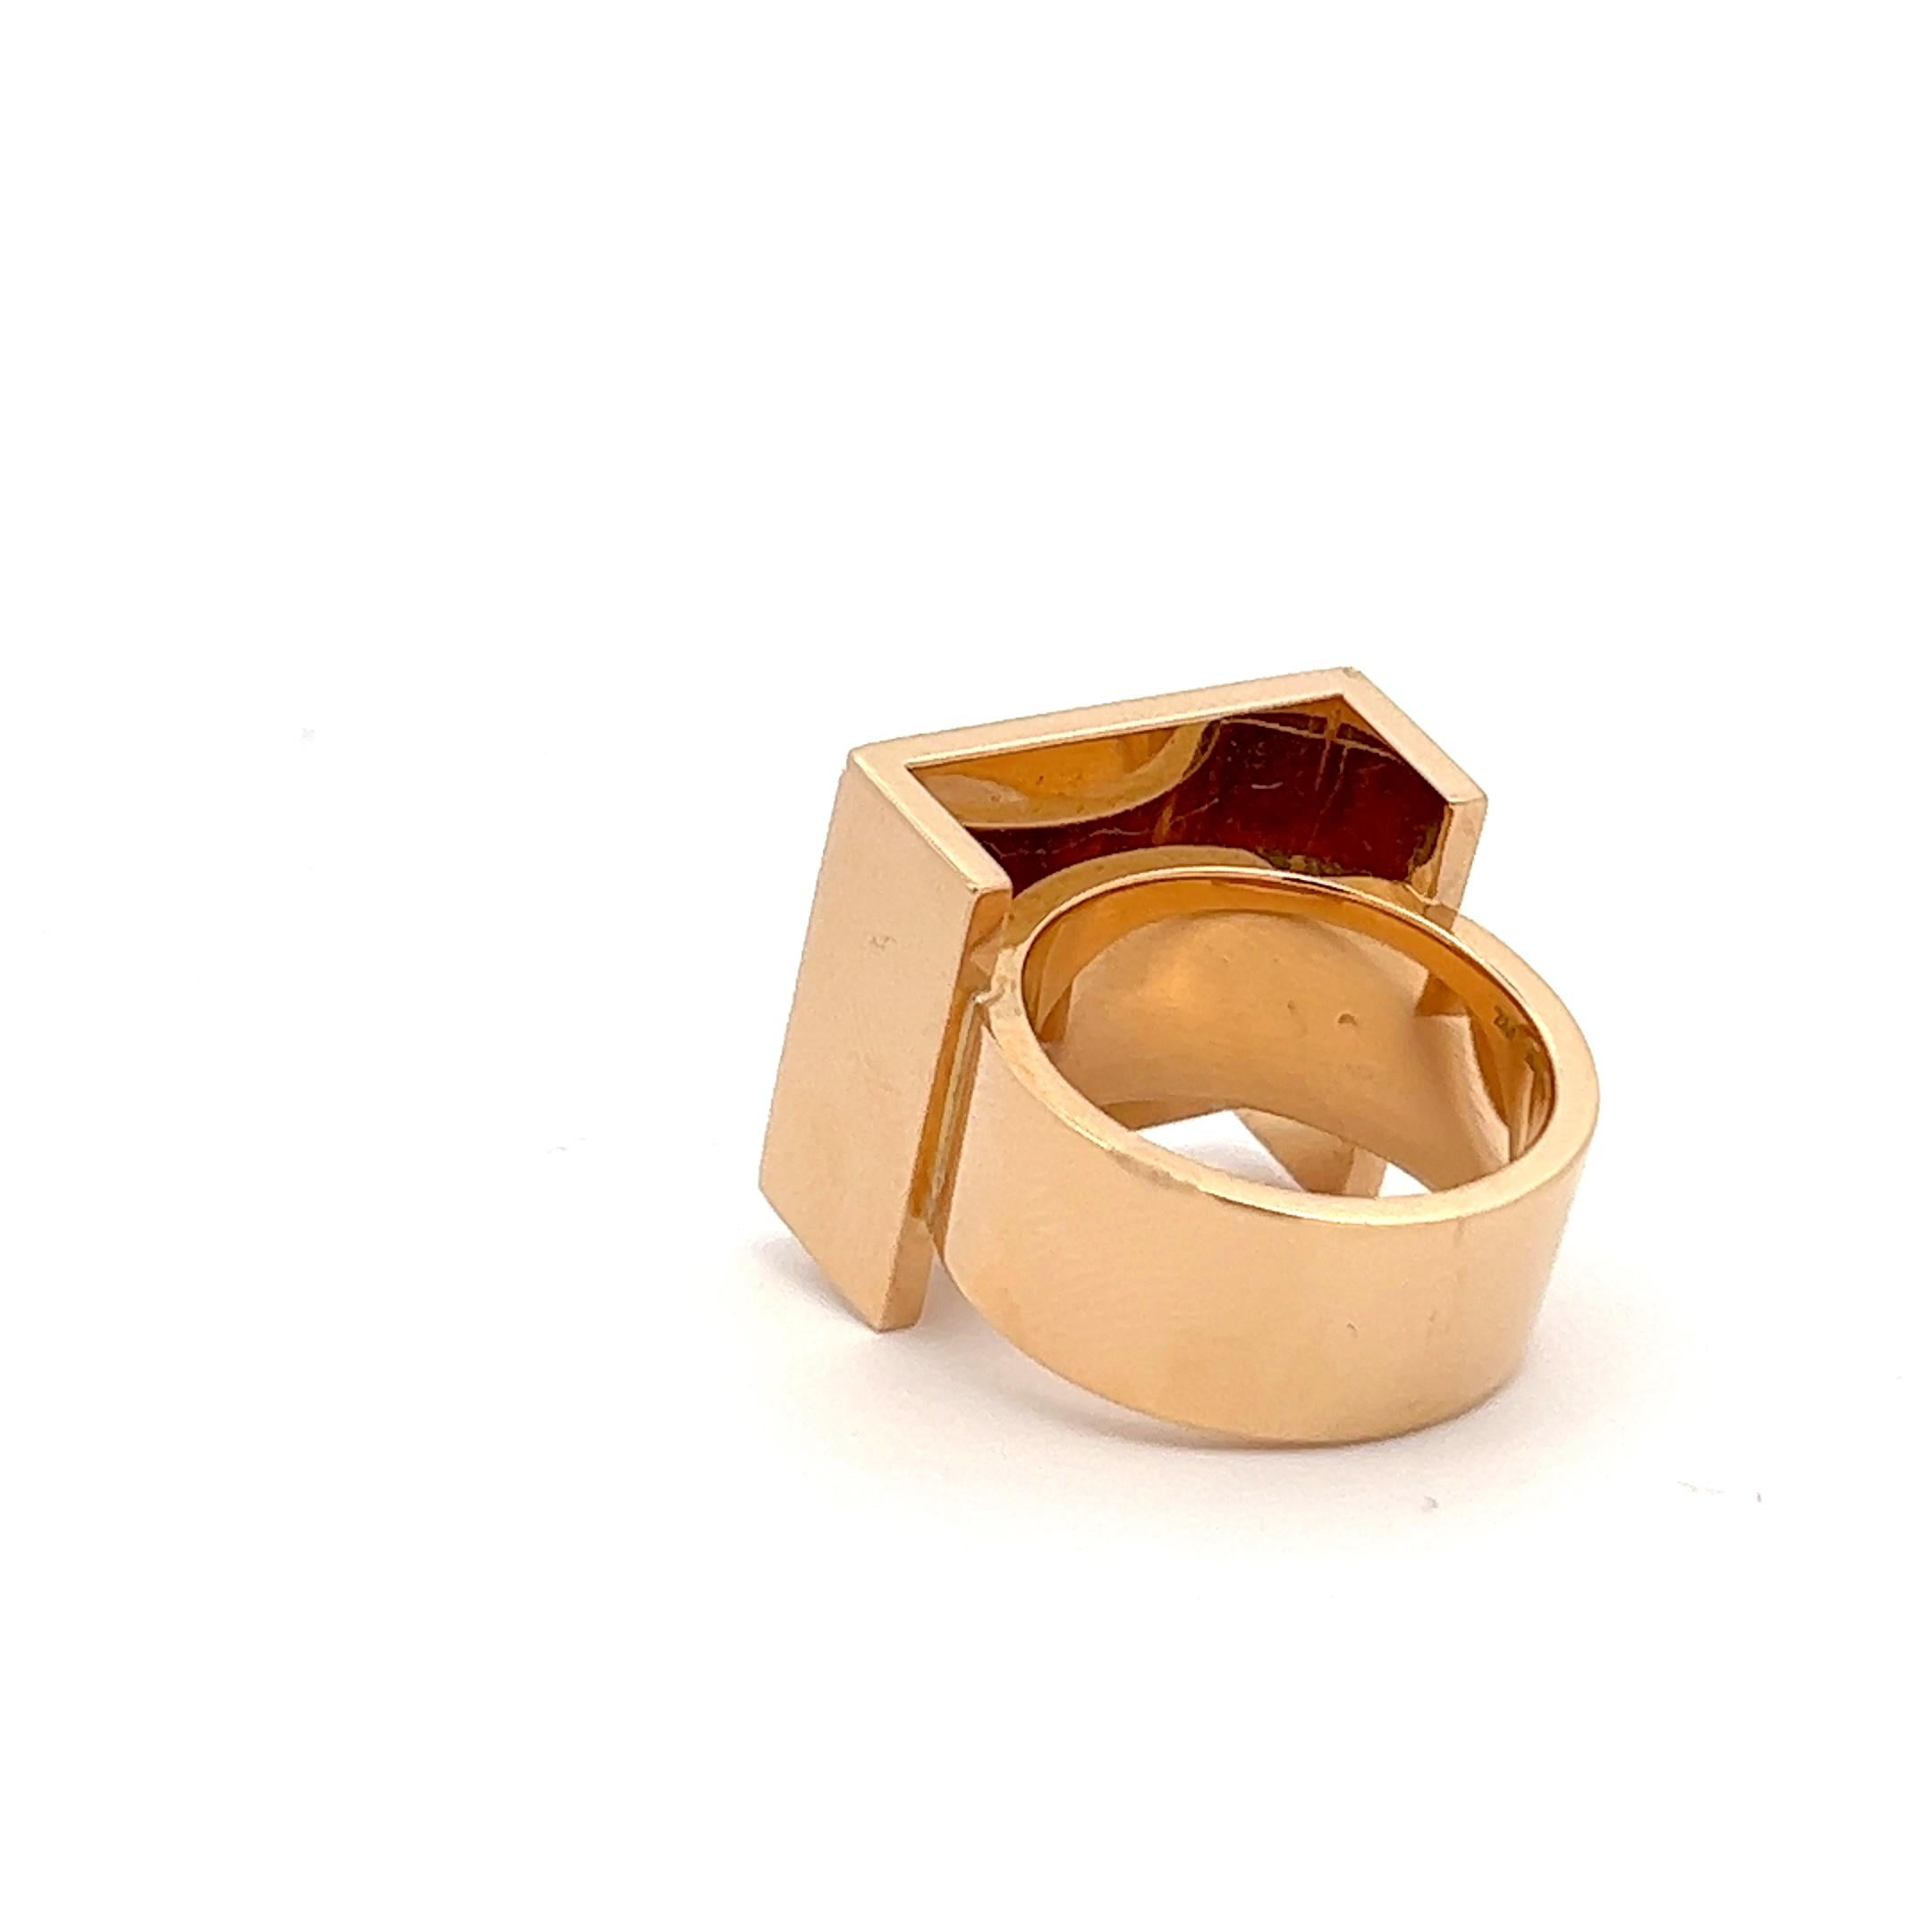 Ein Ring aus 18 Karat Gelbgold von Trudel.

Herkunft: Schweiz.
Alter: ca. 1960-1970.
Ringgröße: 55.
Gewicht: ca. 33,3 Gramm.
Unterschrieben: Trudel. Gestempelt mit 750 (für 18k Gold).

Dieser Ring kann von einem Goldschmied leicht in der Größe